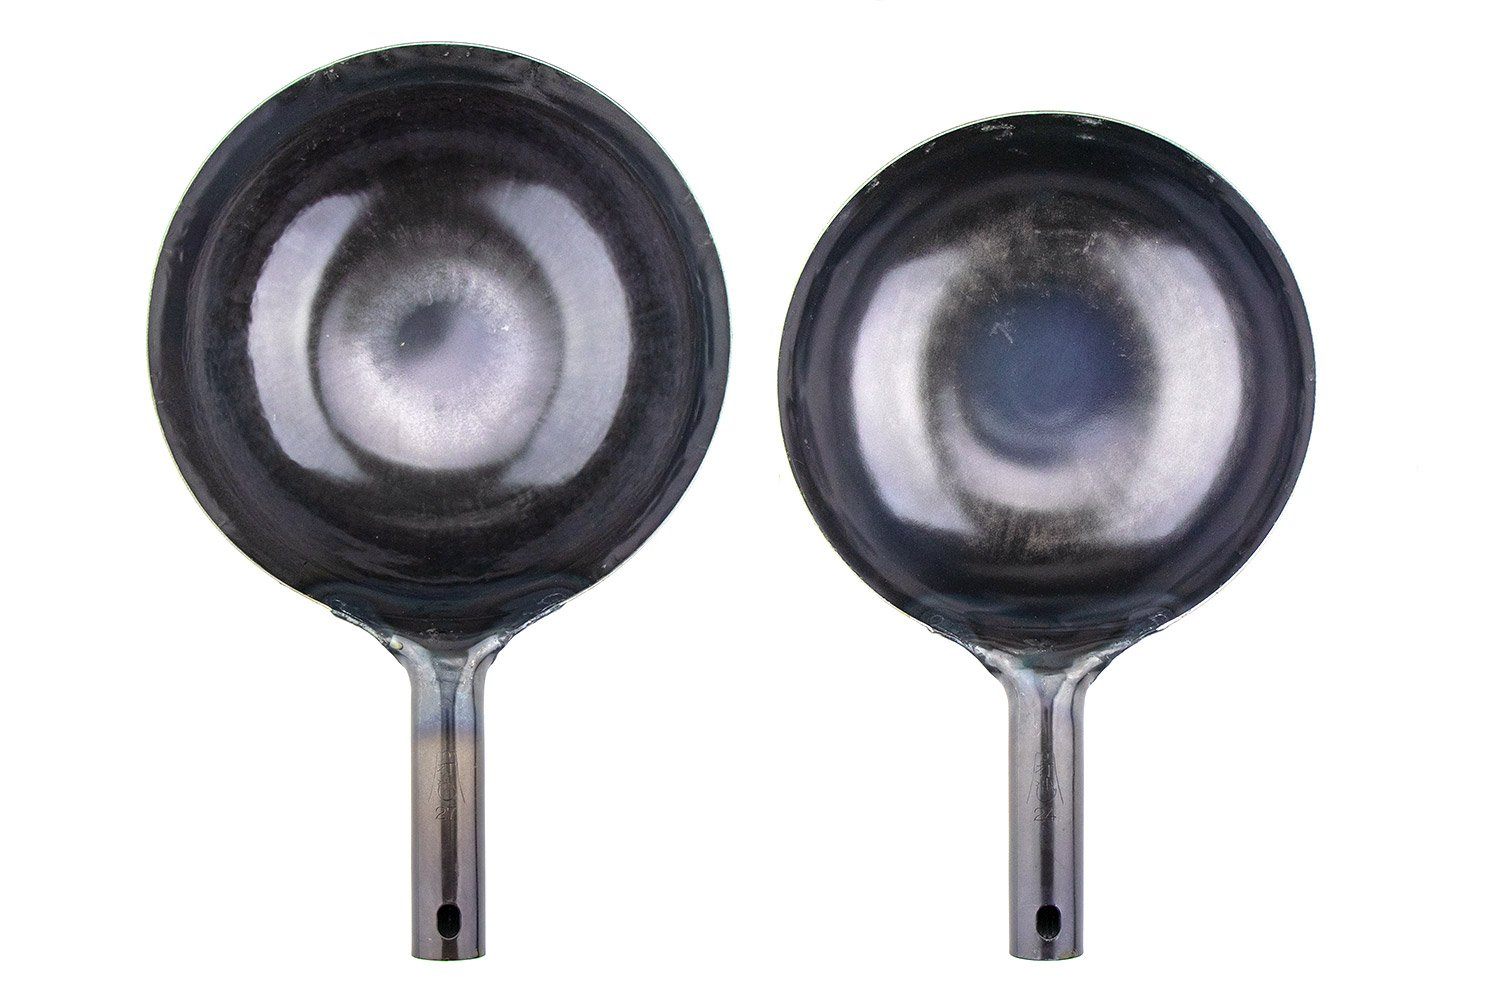 Shuoguoleilei shuoguoleilei Chinese Hand Hammered Iron Woks Set, Non-stick  No Coating Preseasoned Wok Blue Round Bottom Wok Pan For Electric